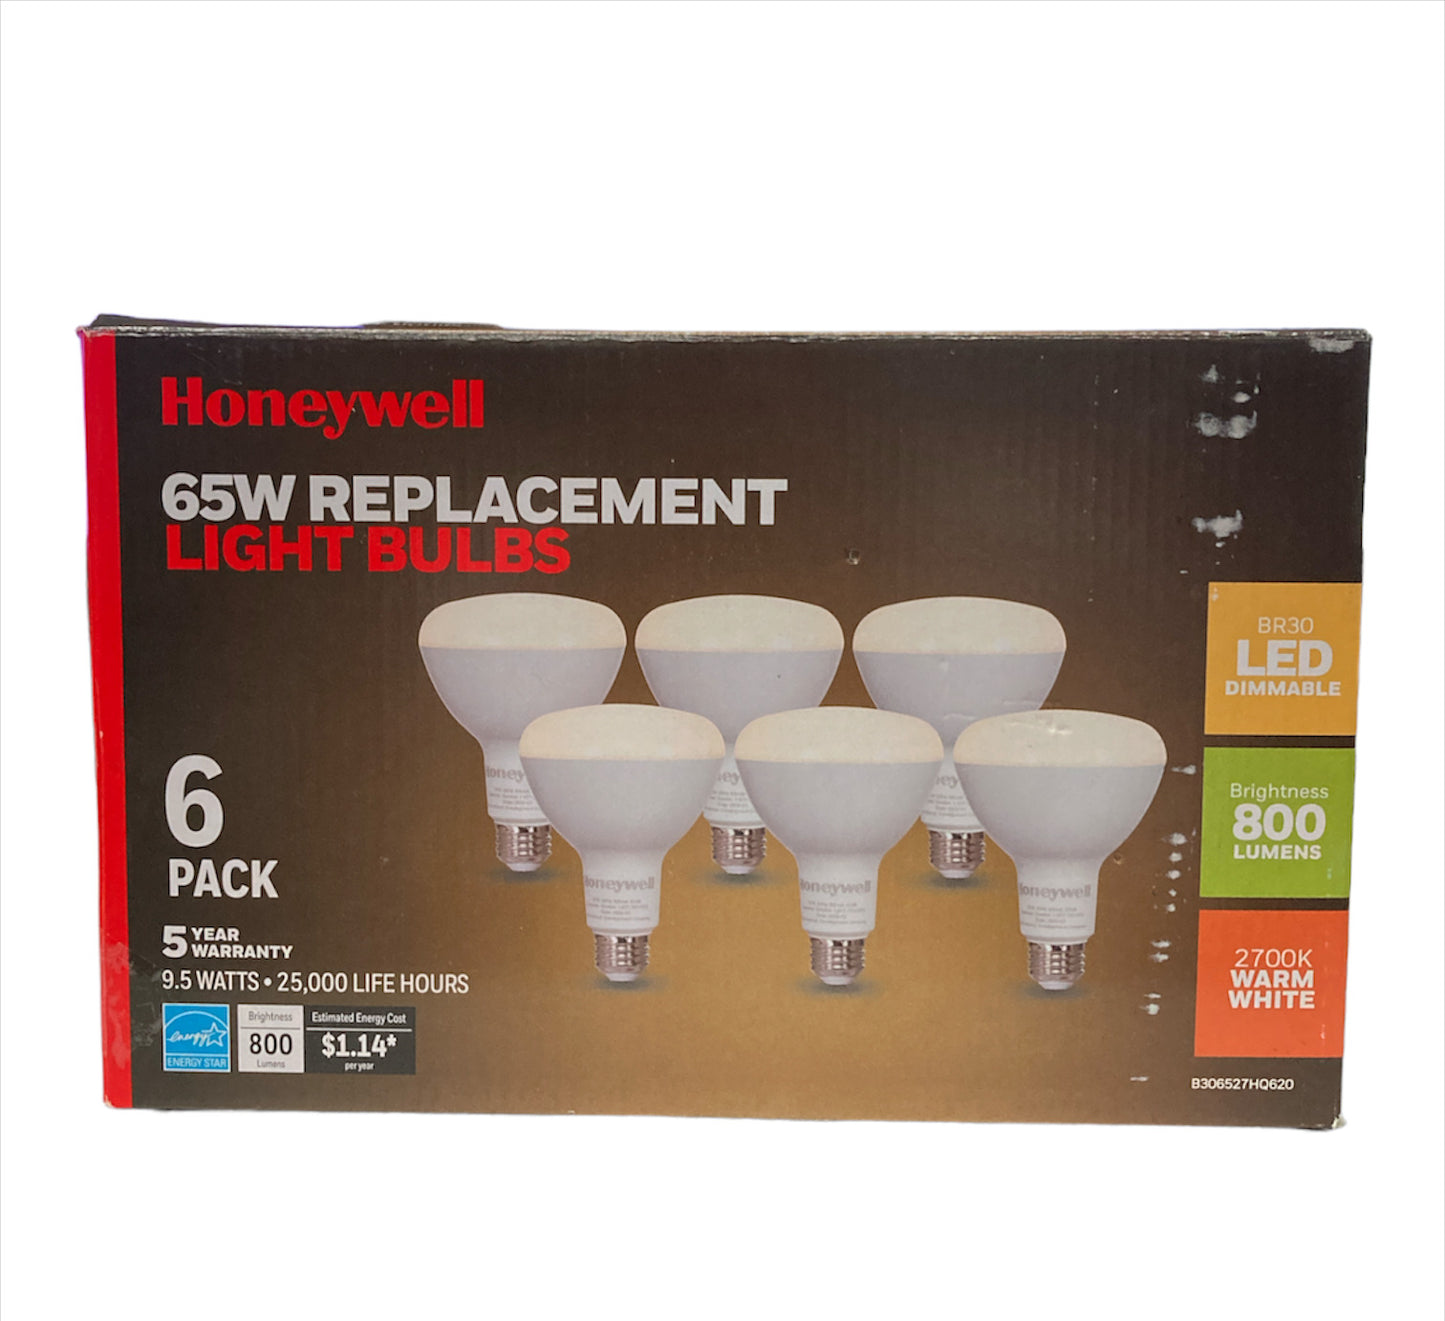 Honeywell 800 Lumen BR30 LED Dimmable Light Bulbs - Warm White (6-Pack)